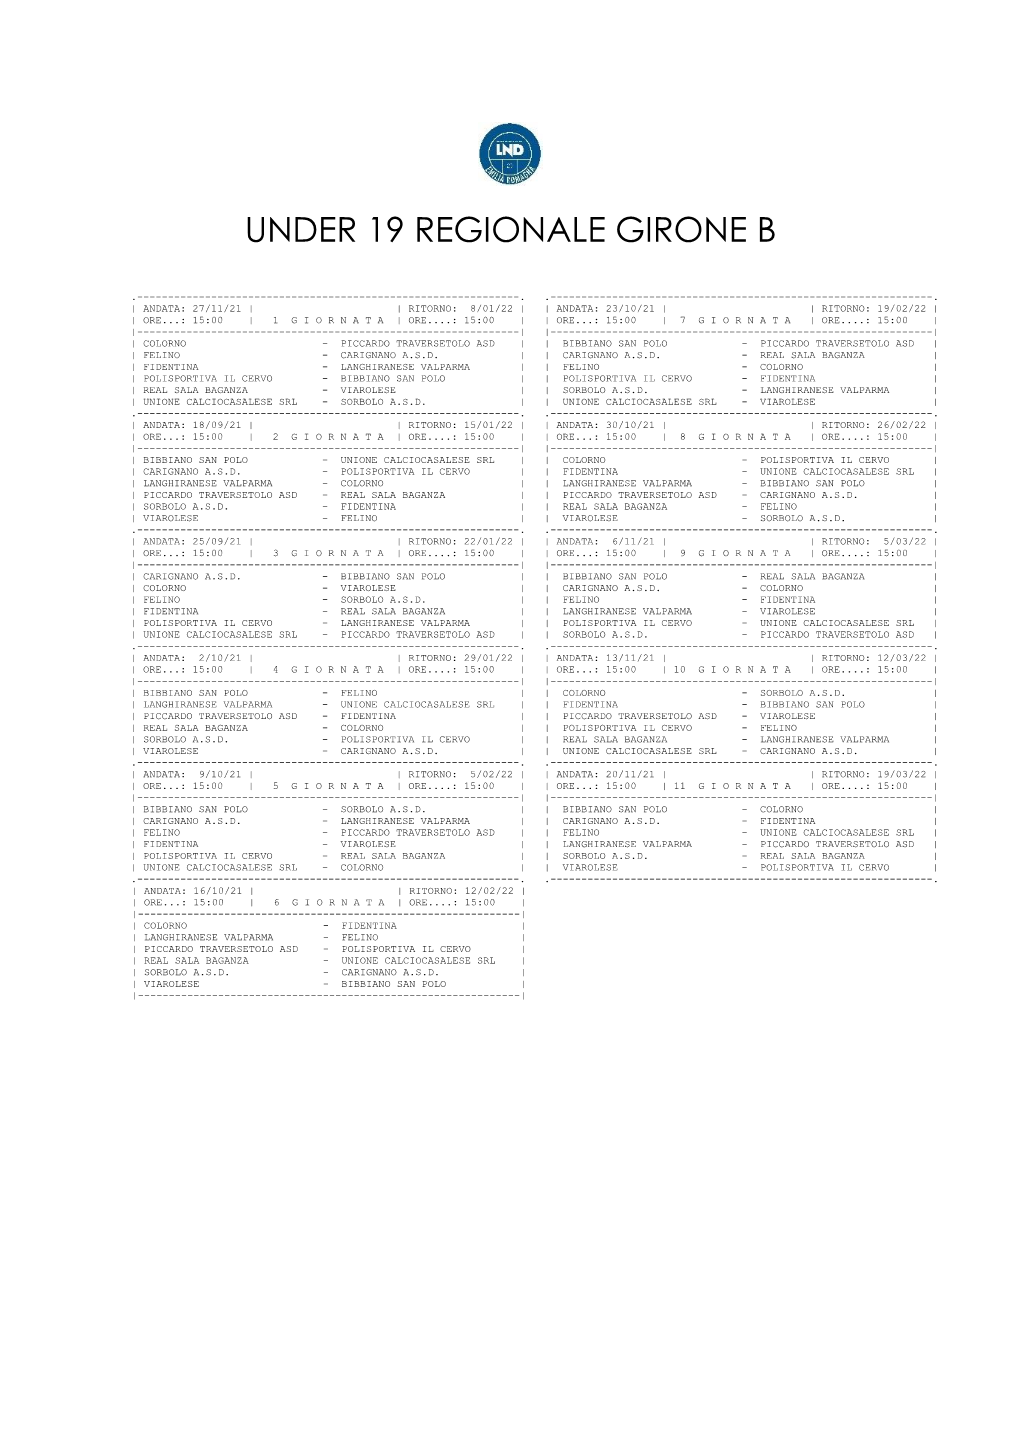 Under 19 Regionale Girone B